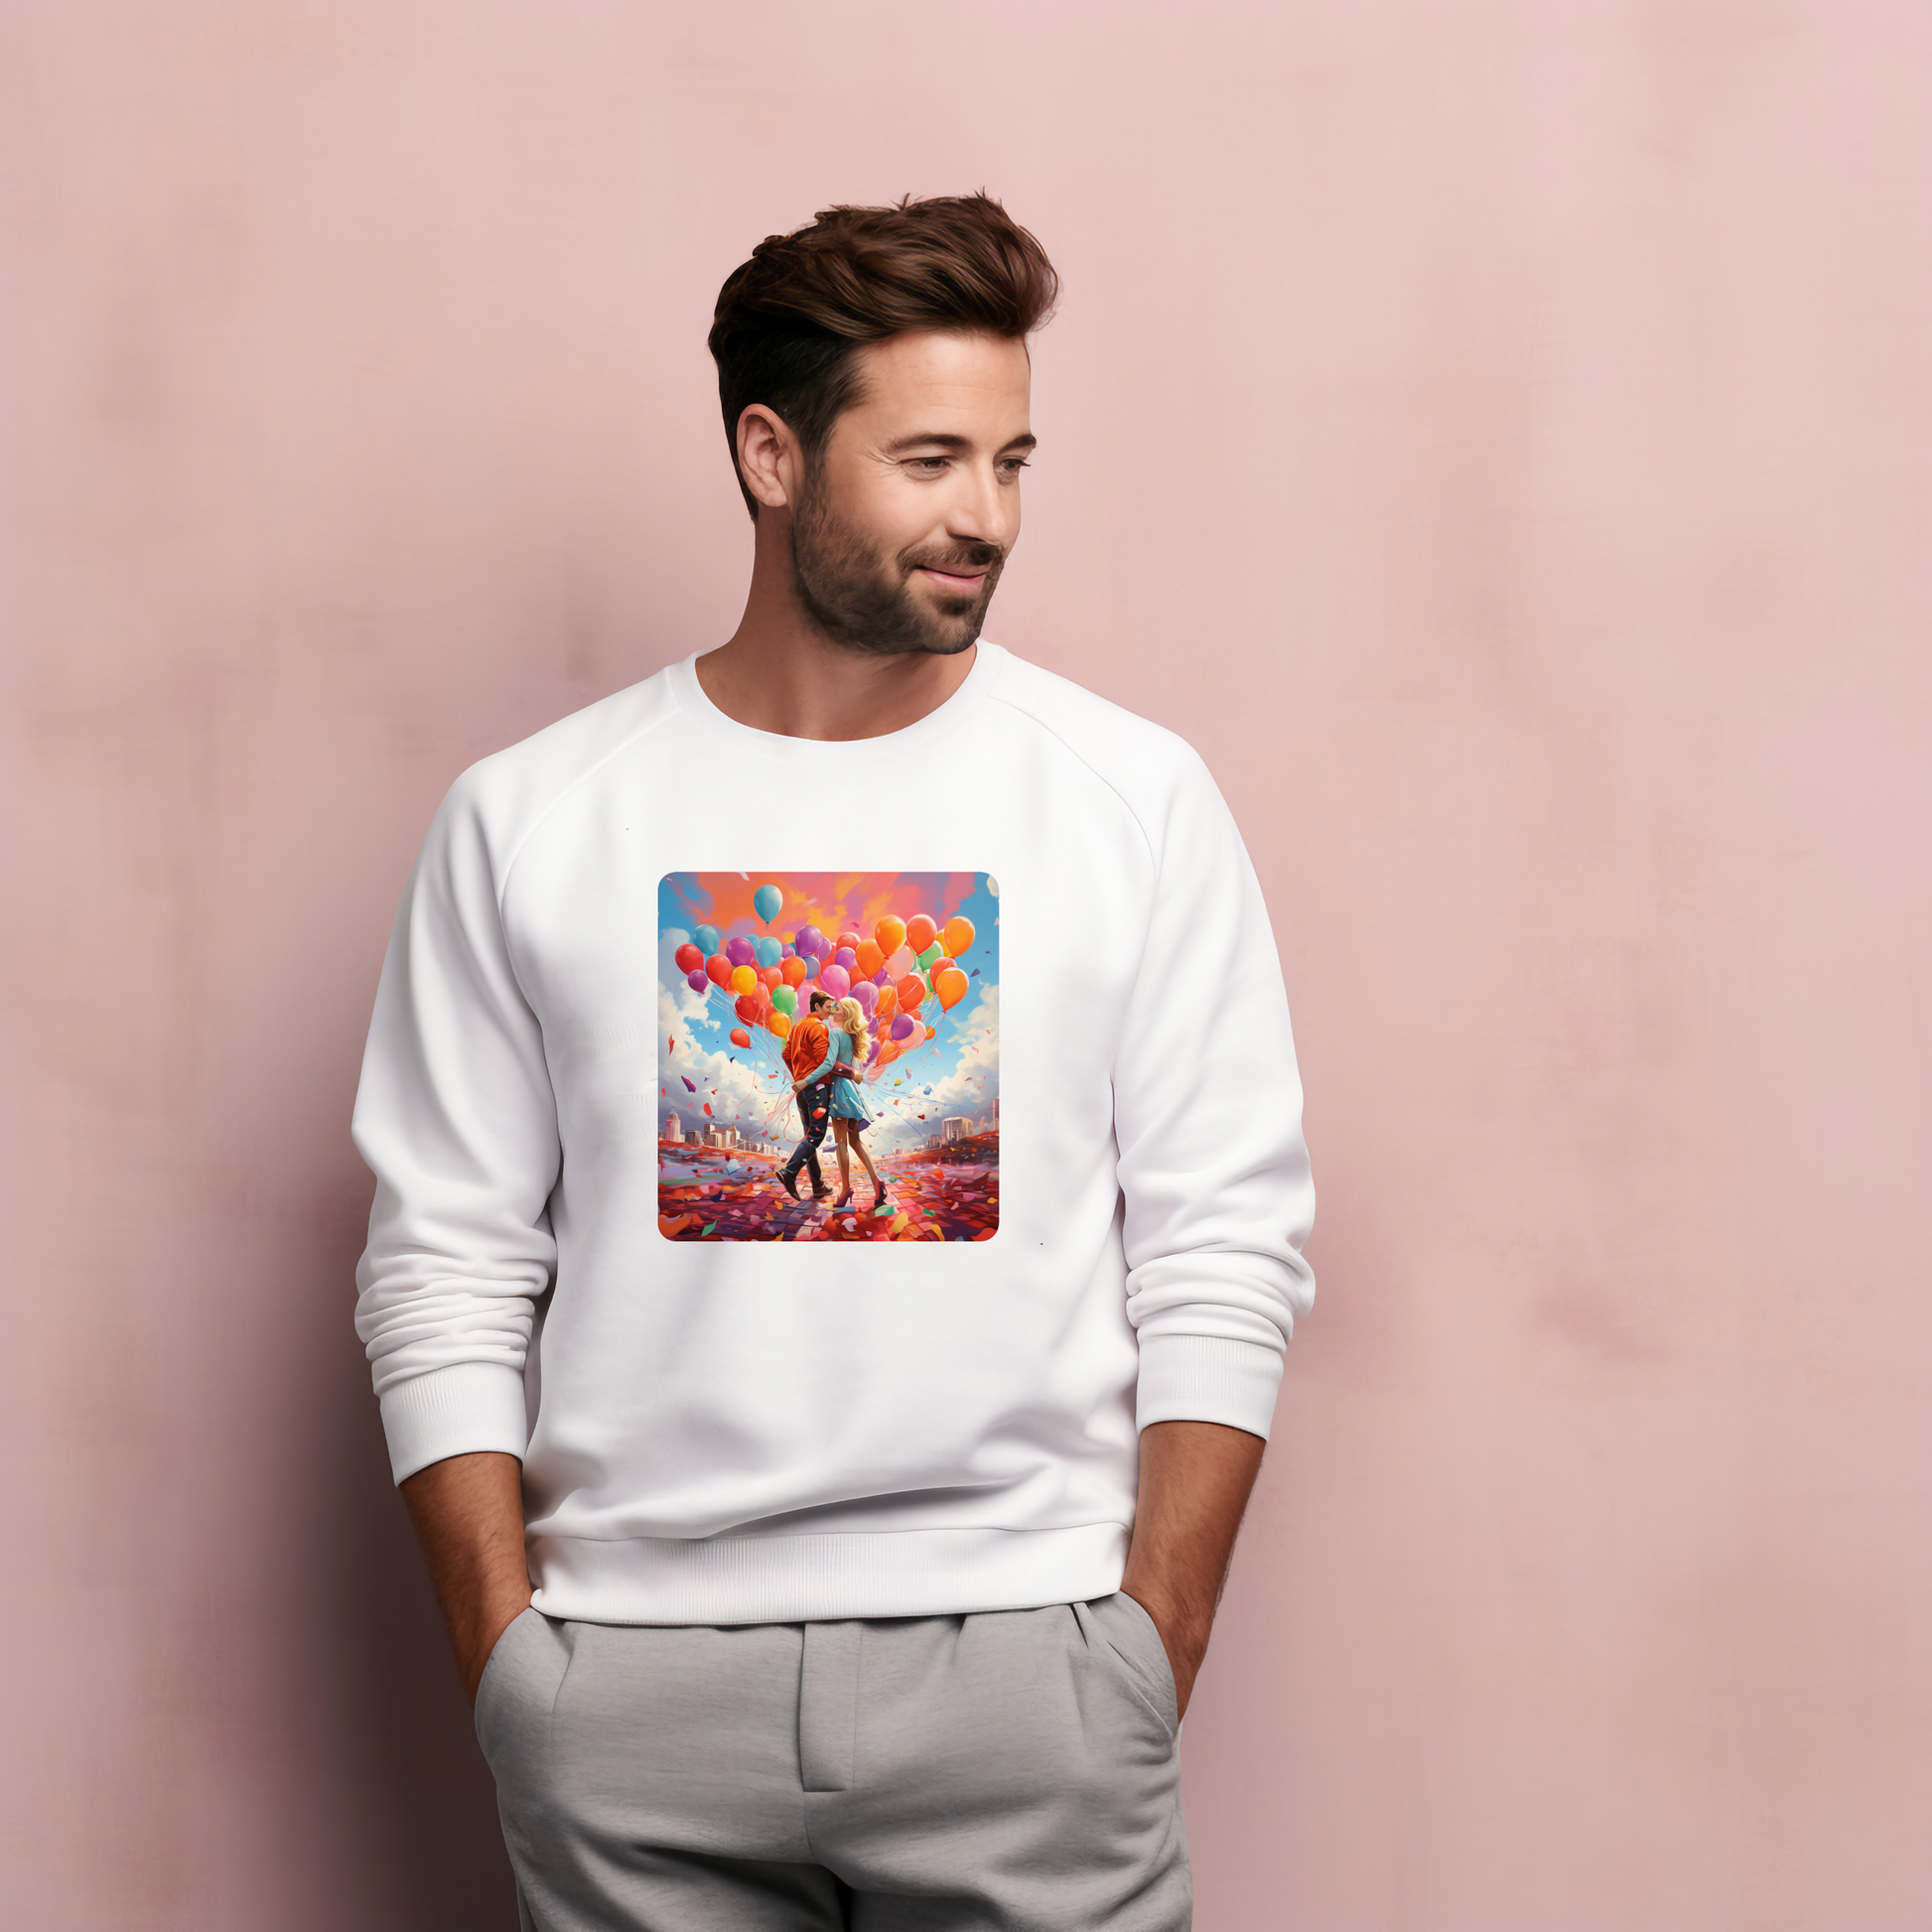 Vyriškas baltas džemperis su spalvingu „Love Balloons“ dizainu. Džemperis pagamintas iš aukštos kokybės medžiagų, sukurtas „Designed By Me“. Puiki dovanos idėja vyrams ar ypatingai progai. Idealus aksesuaras šiandienos optimistiniam ir moderniam stiliui, puikus pasirinkimas kasdieniam dėvėjimui. Produktas skirtas Valentino dienos kolekcijai. Visi produktai,Vyriški džemperiai, Valentino dienos kolekcija 